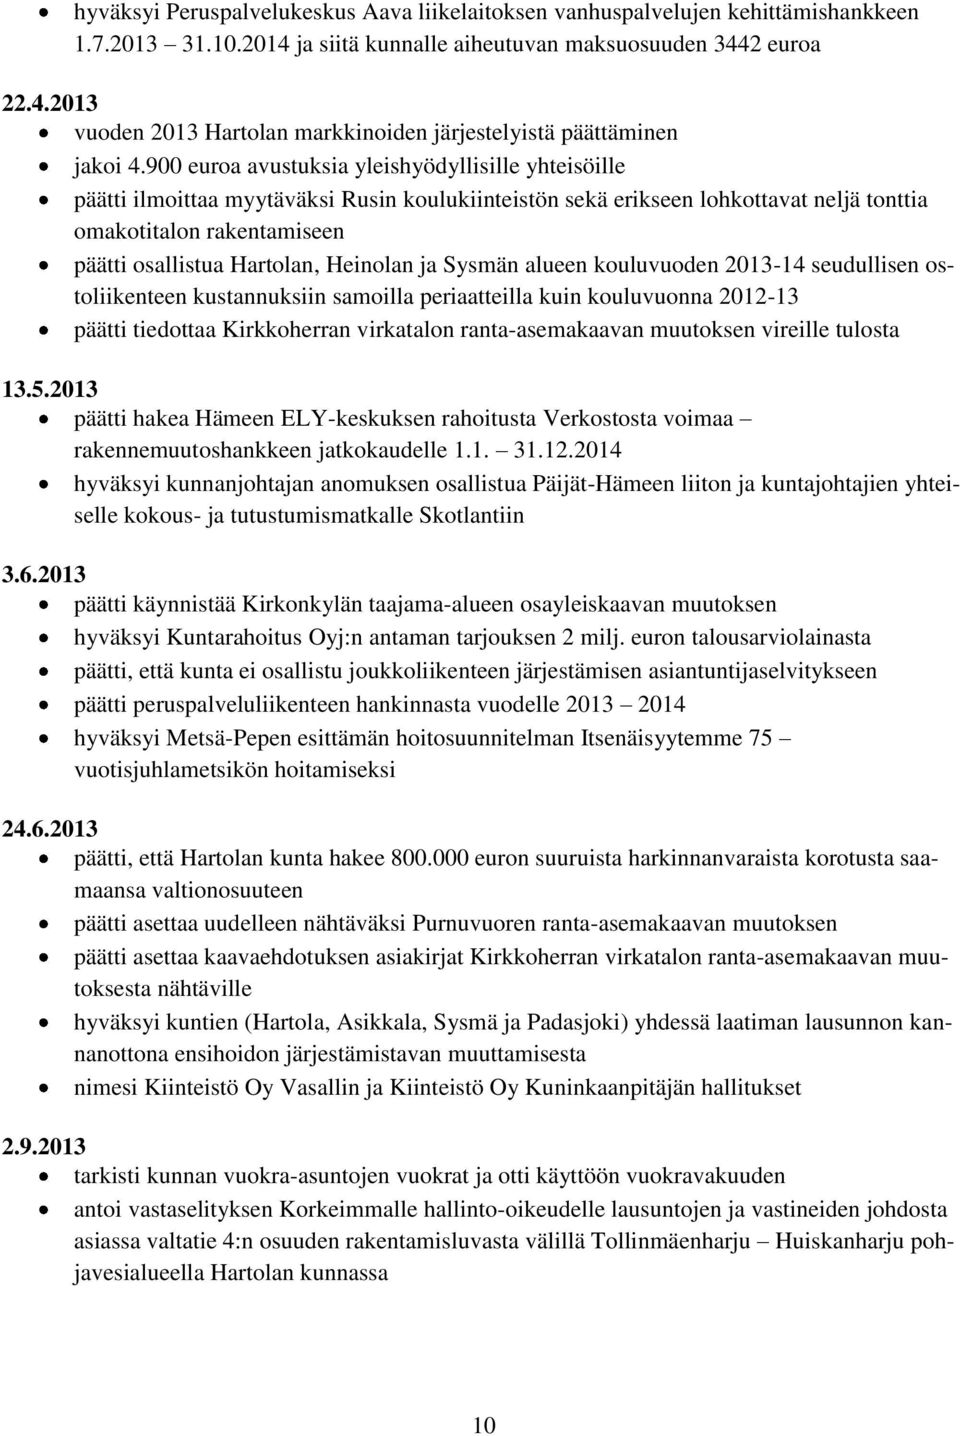 Heinolan ja Sysmän alueen kouluvuoden 2013-14 seudullisen ostoliikenteen kustannuksiin samoilla periaatteilla kuin kouluvuonna 2012-13 päätti tiedottaa Kirkkoherran virkatalon ranta-asemakaavan